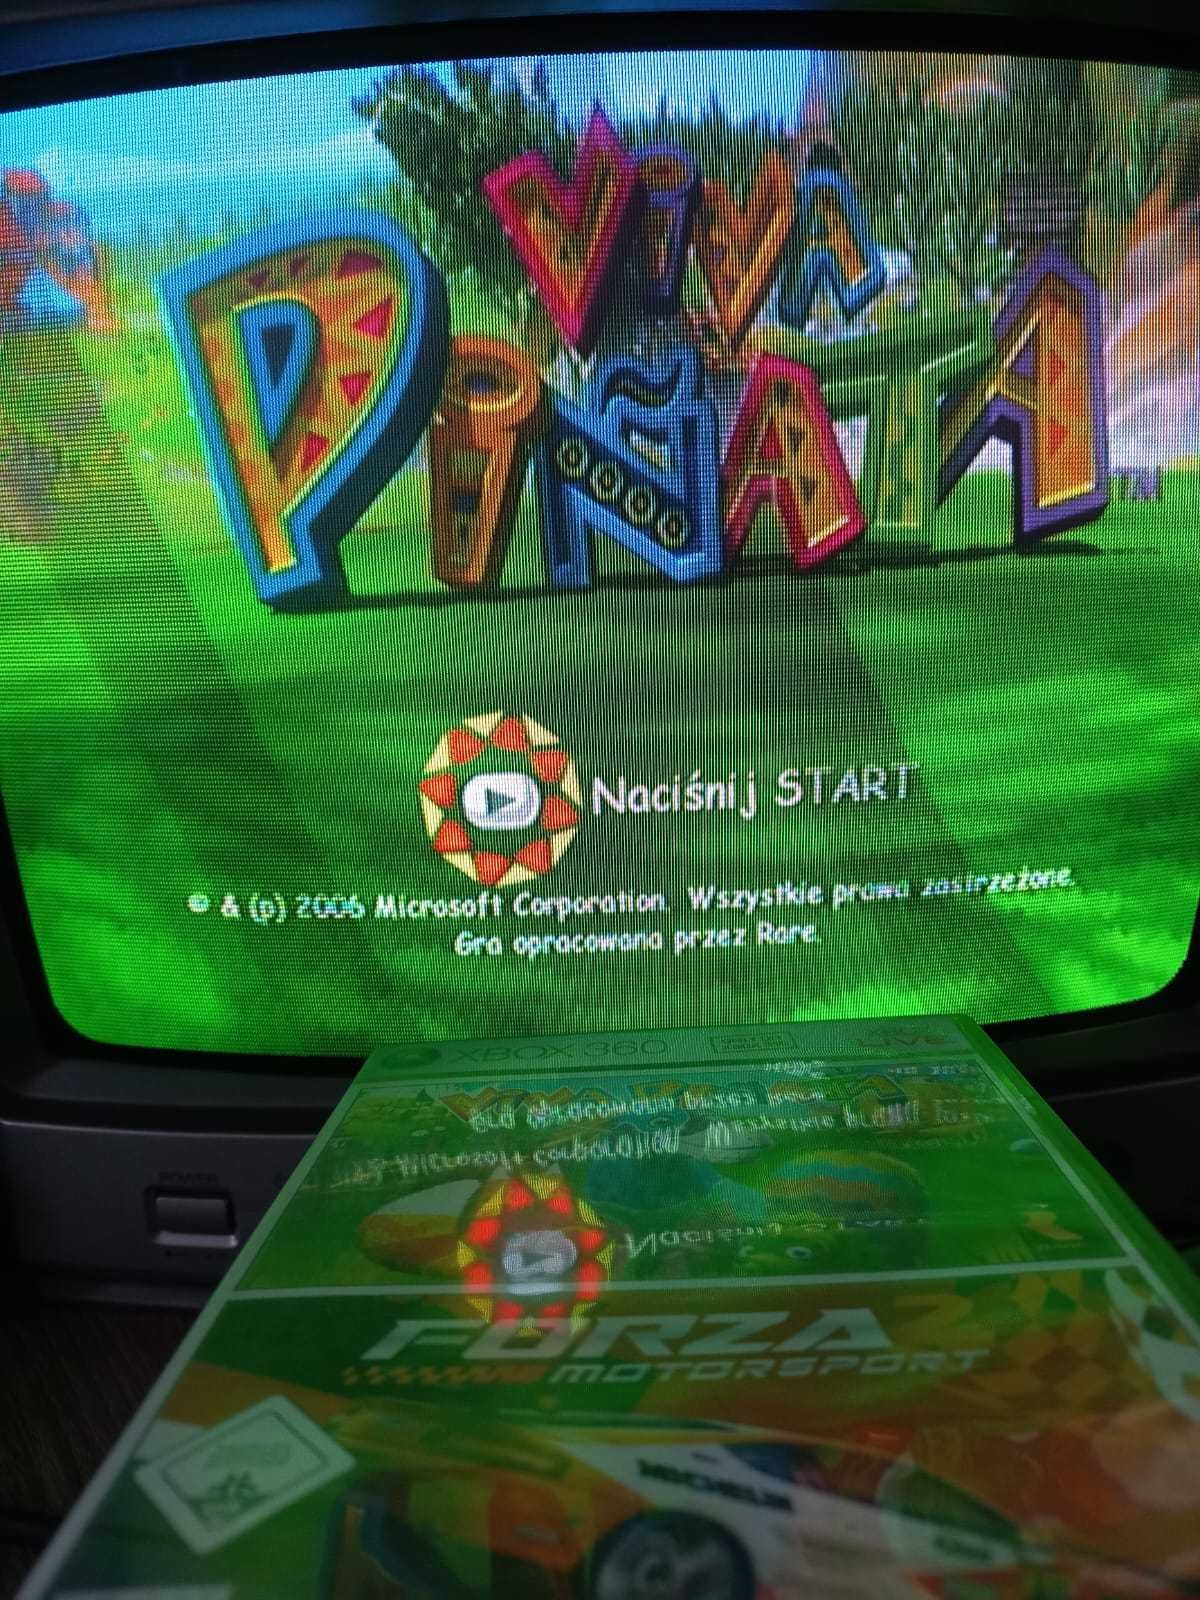 Viva Pinata Forza Motorsport 2 Xbox 360 gra prezent